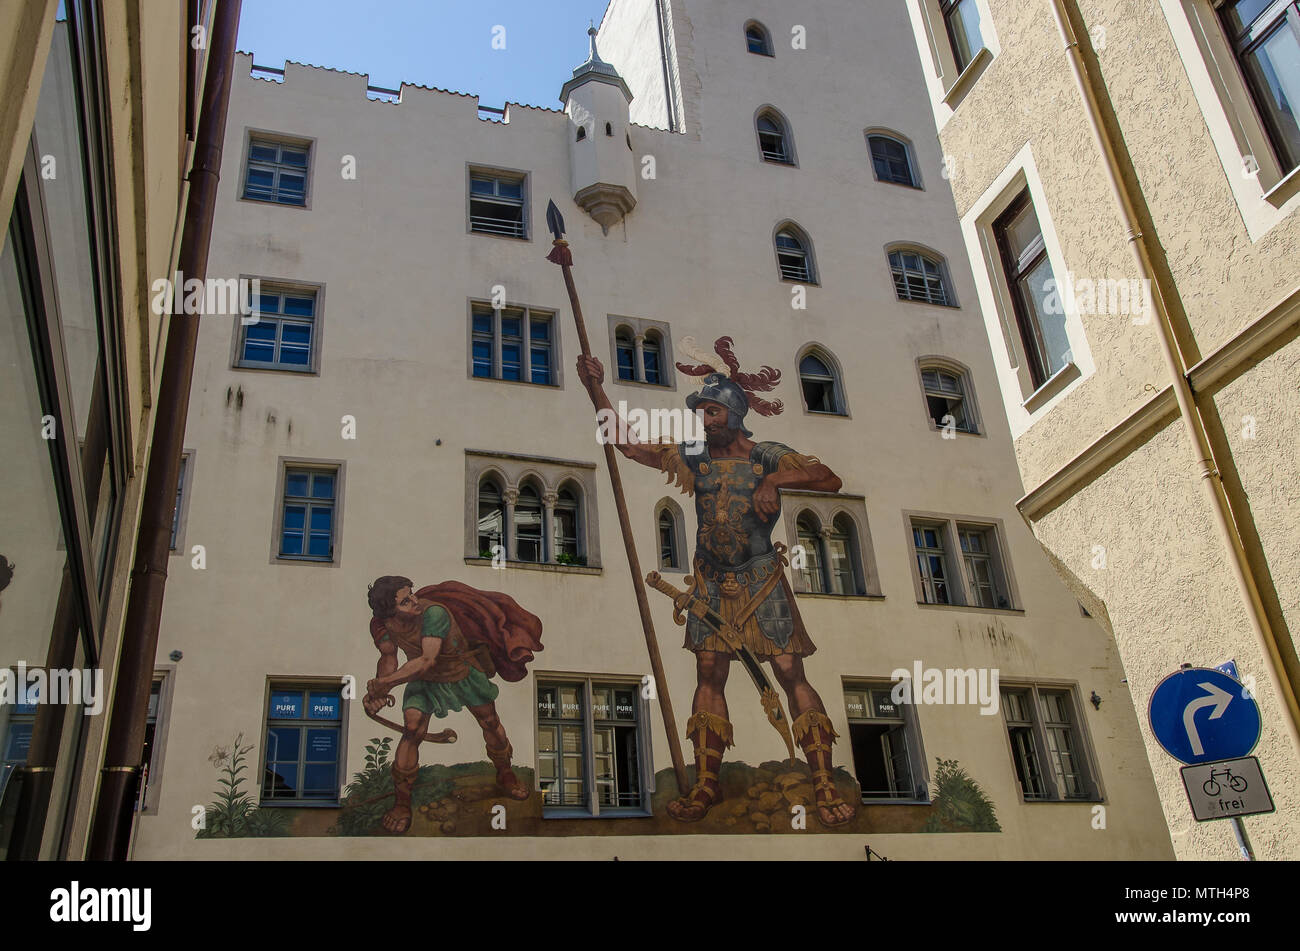 El Goliat House, con su pintura de la lucha entre David y Goliat, que es uno de los lugares del Patrimonio Mundial de la UNESCO, la ciudad de Regensburg. Foto de stock